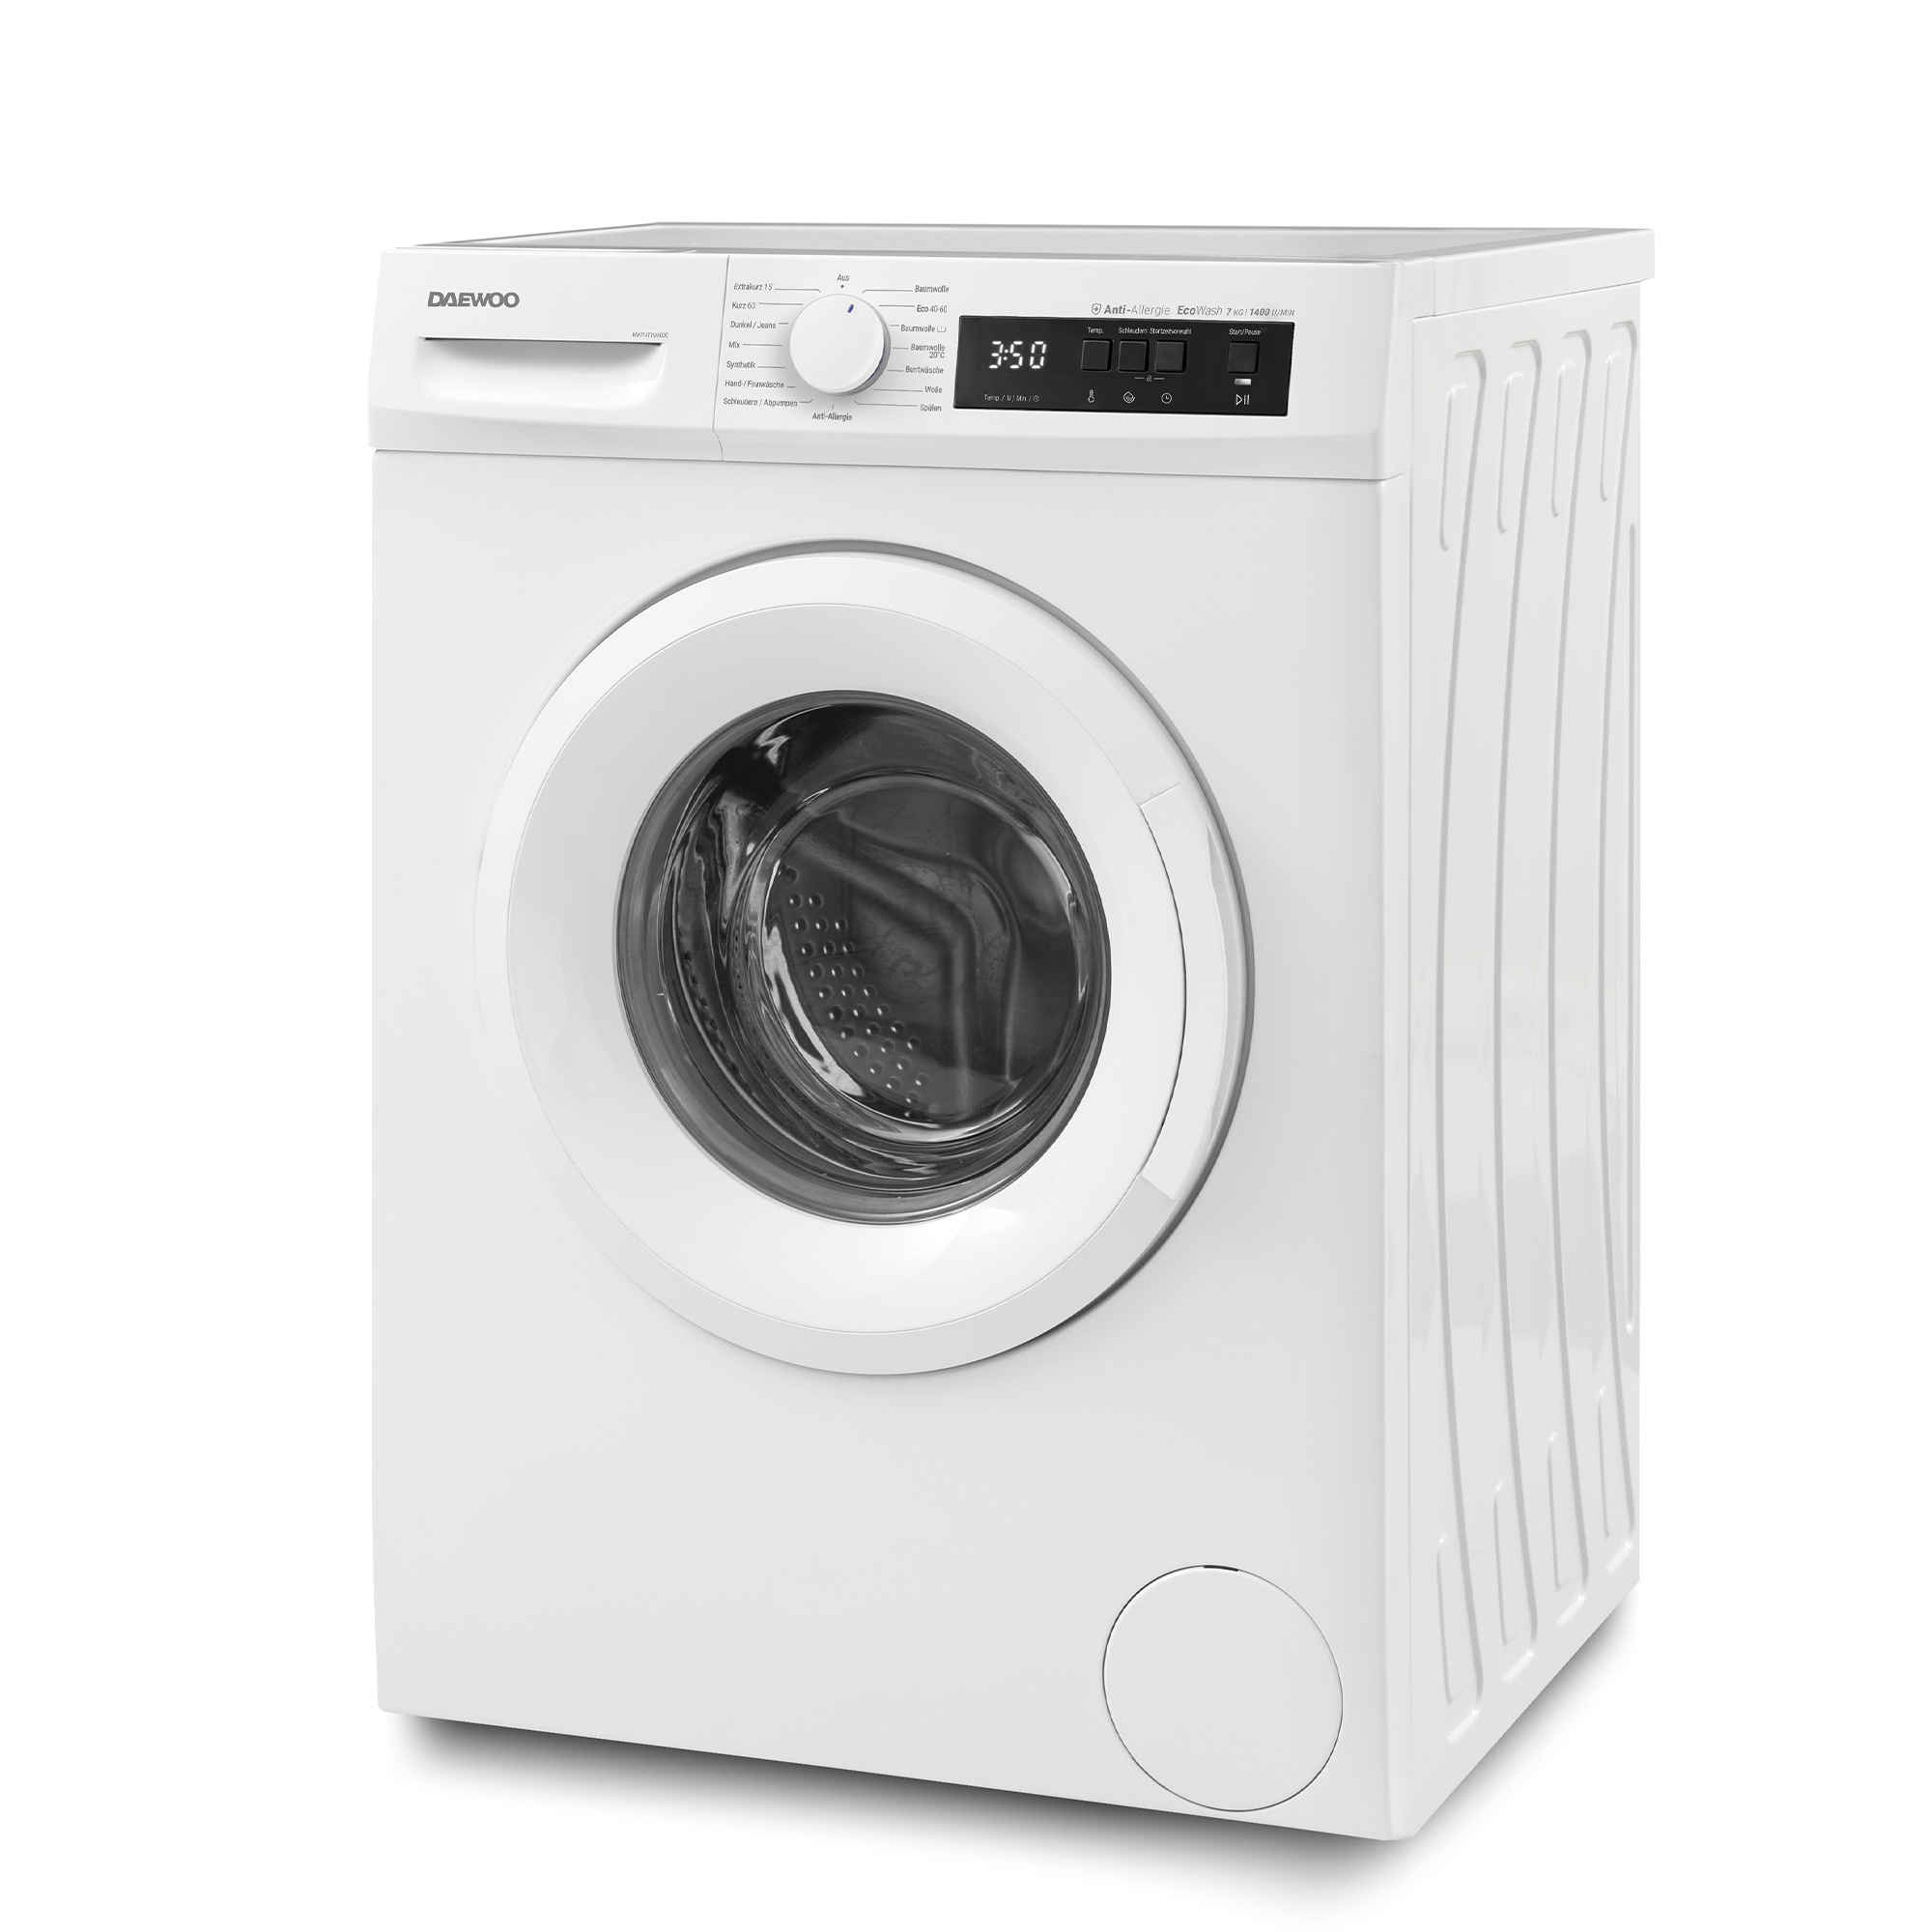 kg, (7 DAEWOO A) WM714T1WA0DE Waschmaschine